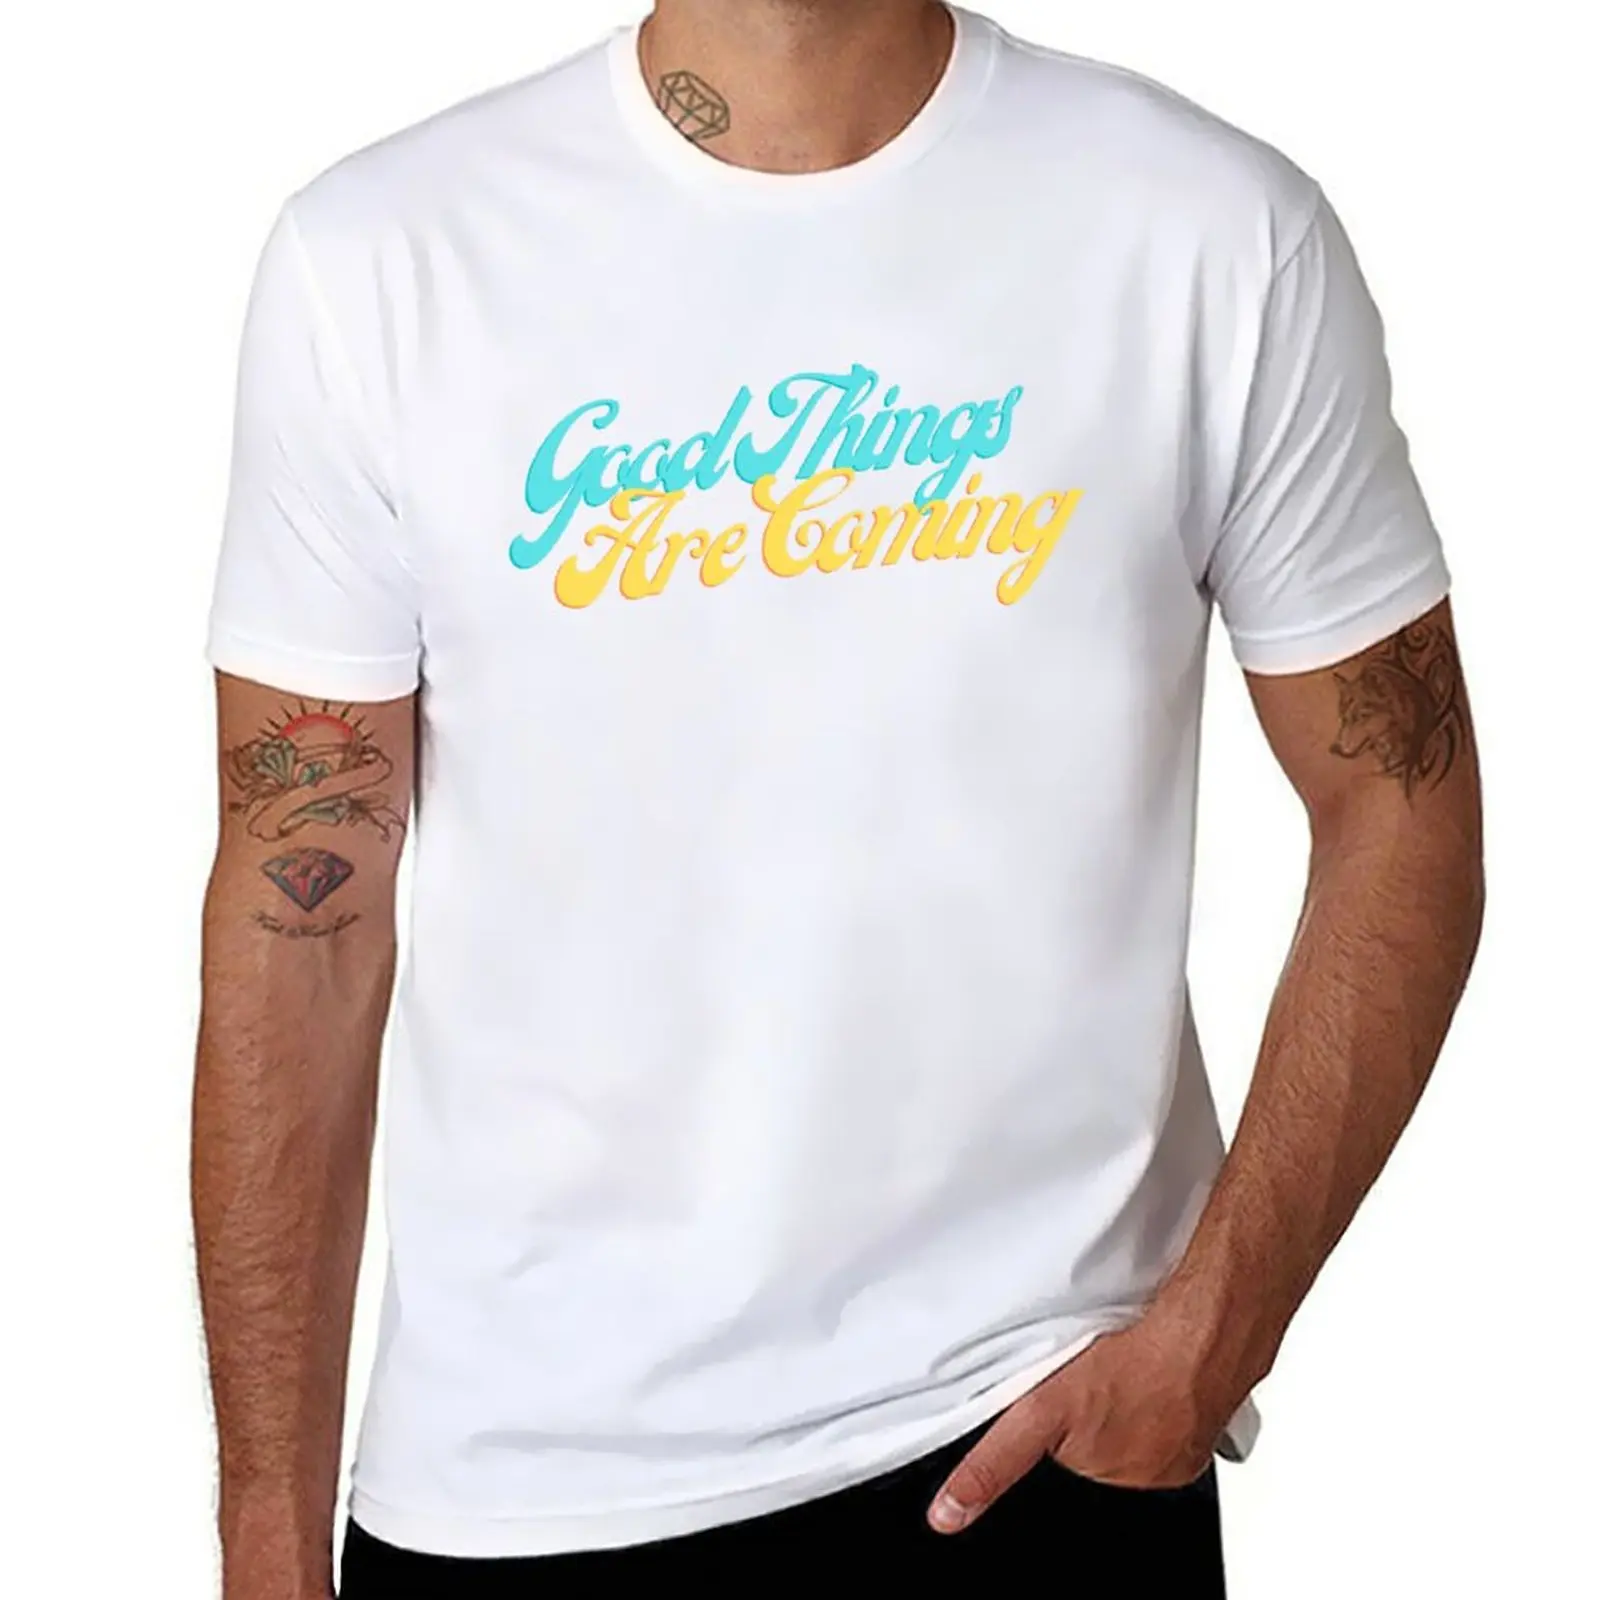 

Новые поступления хороших вещей, футболки с графическим рисунком, мужские футболки, простые футболки